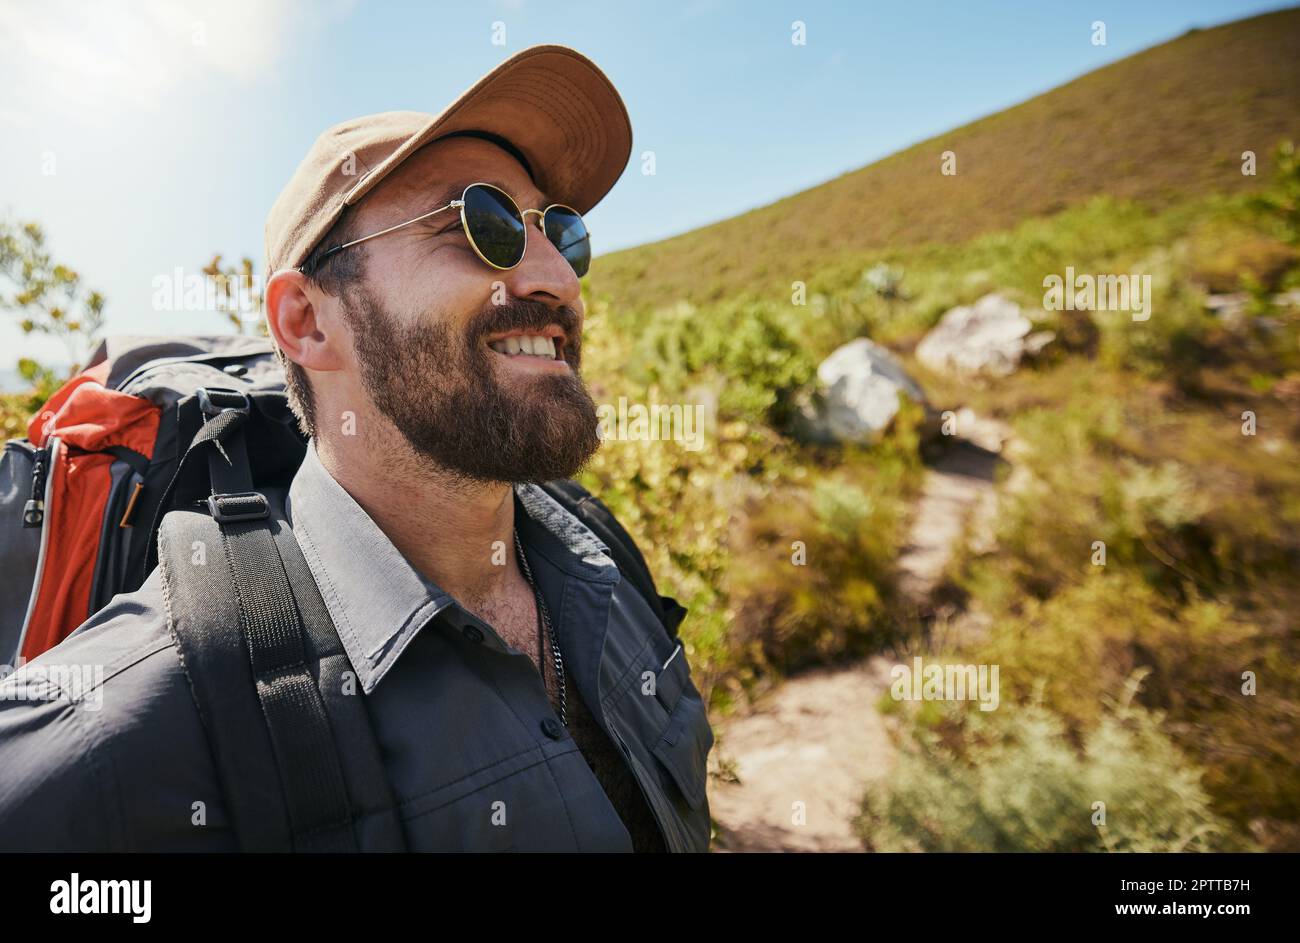 al aventurero con gorro de gafas y una mochila mientras camina o explora por las montañas. Hombre guapo con barba mientras exploraba Fotografía de stock - Alamy